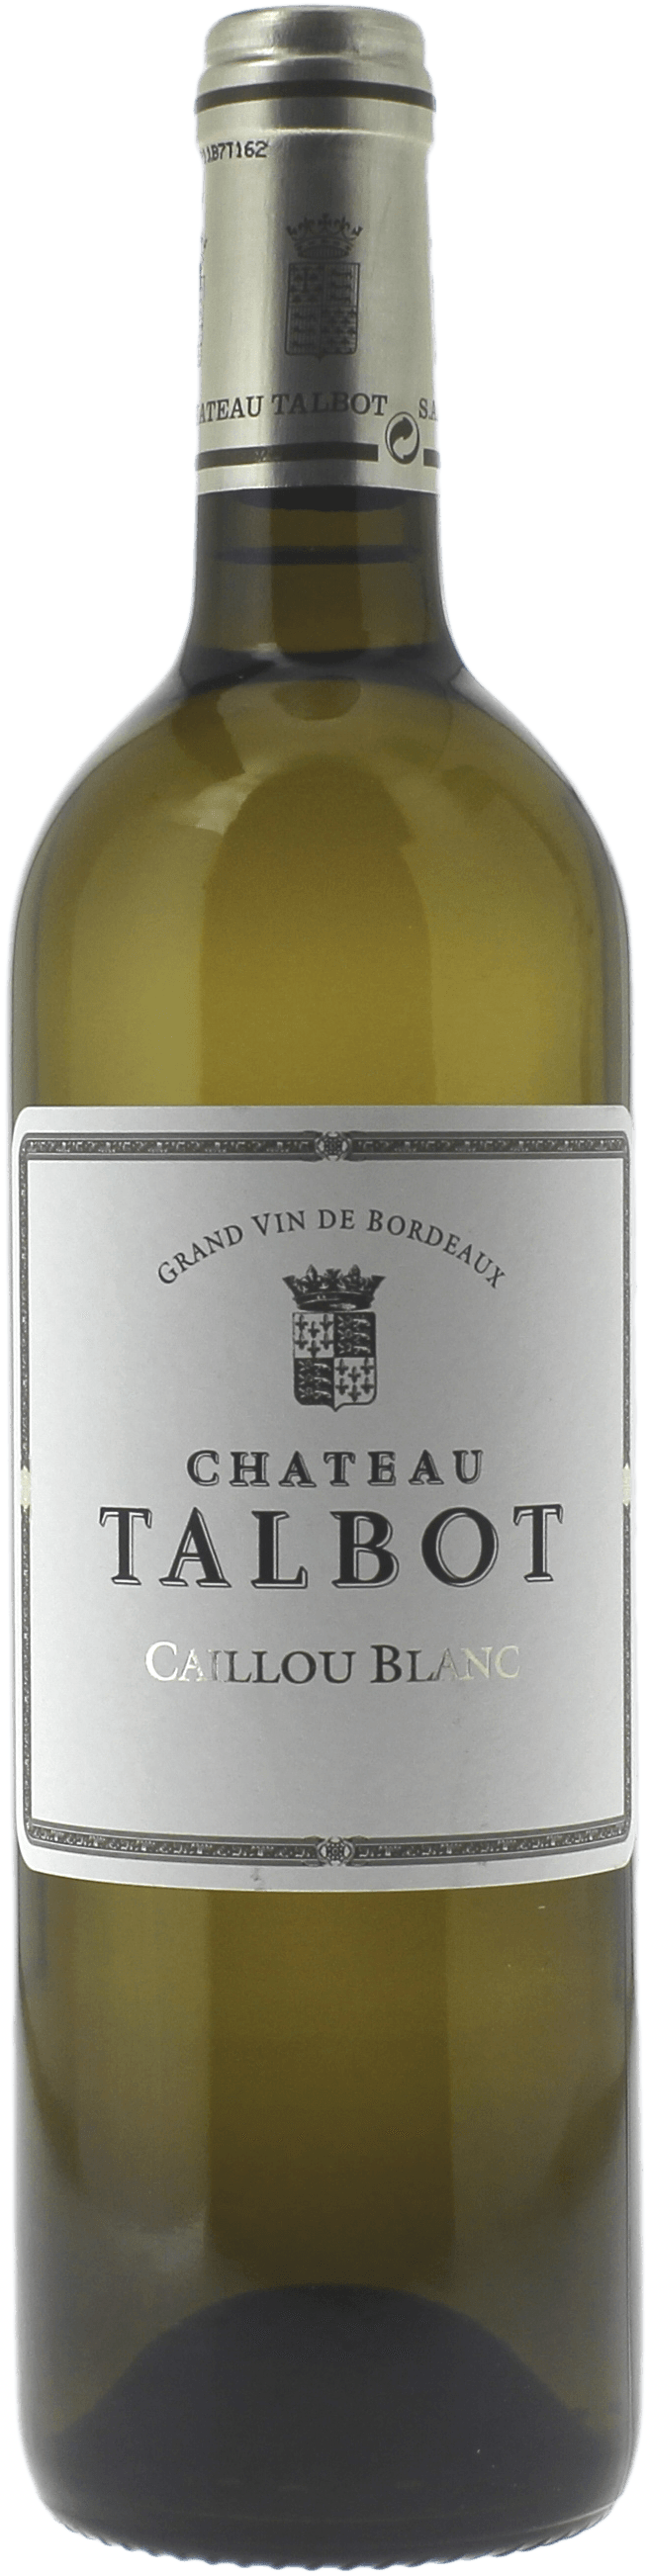 Caillou blanc de talbot 2018  Bordeaux, Bordeaux blanc